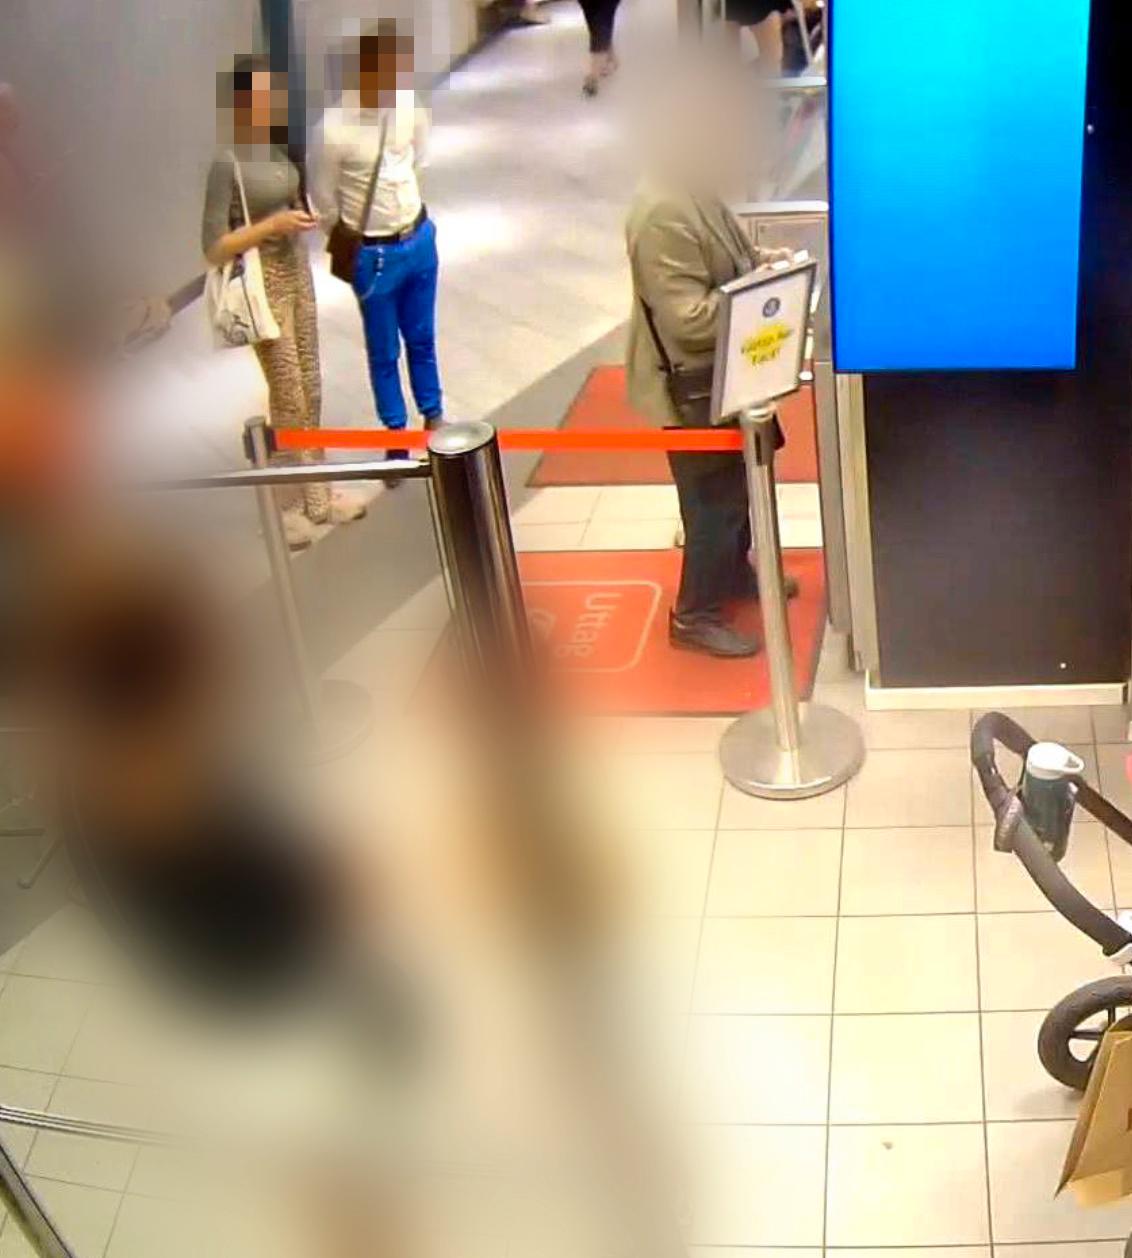 Övervakningsfoto från Ringens köpcentrum. Här står paret bakom den äldre kvinnan när hon tar ut pengar, sedan följer de efter henne och stjäl hennes bankkort.